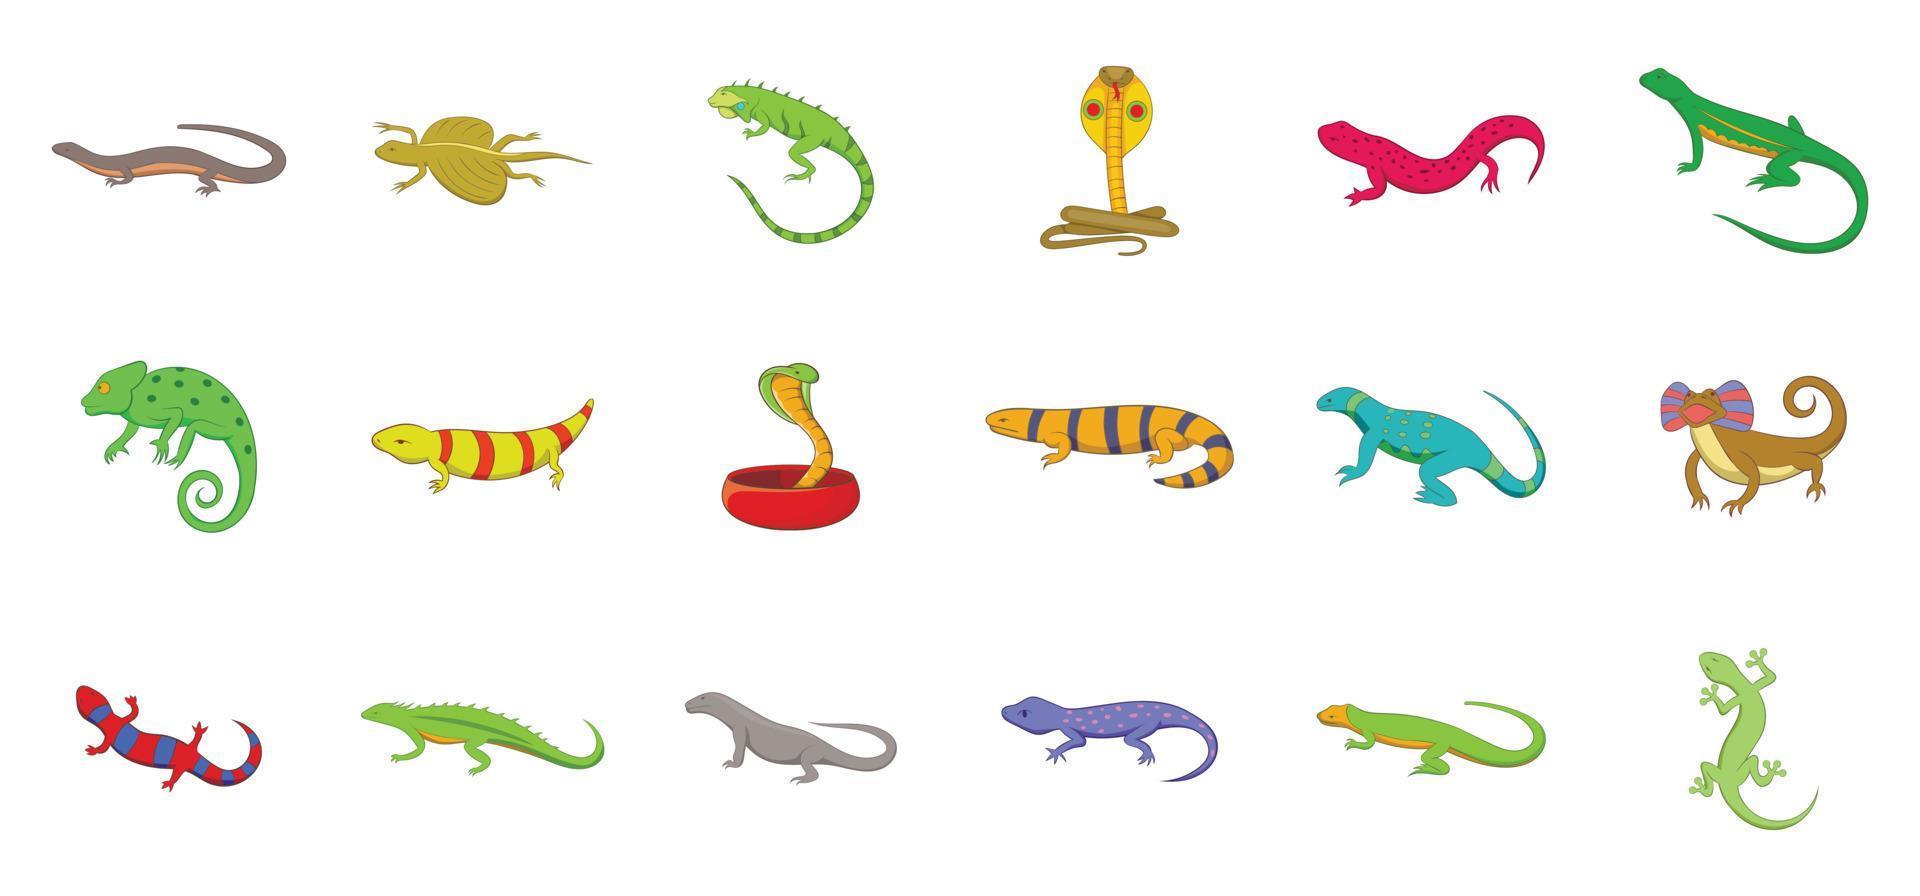 Reptile icon set, cartoon style vector